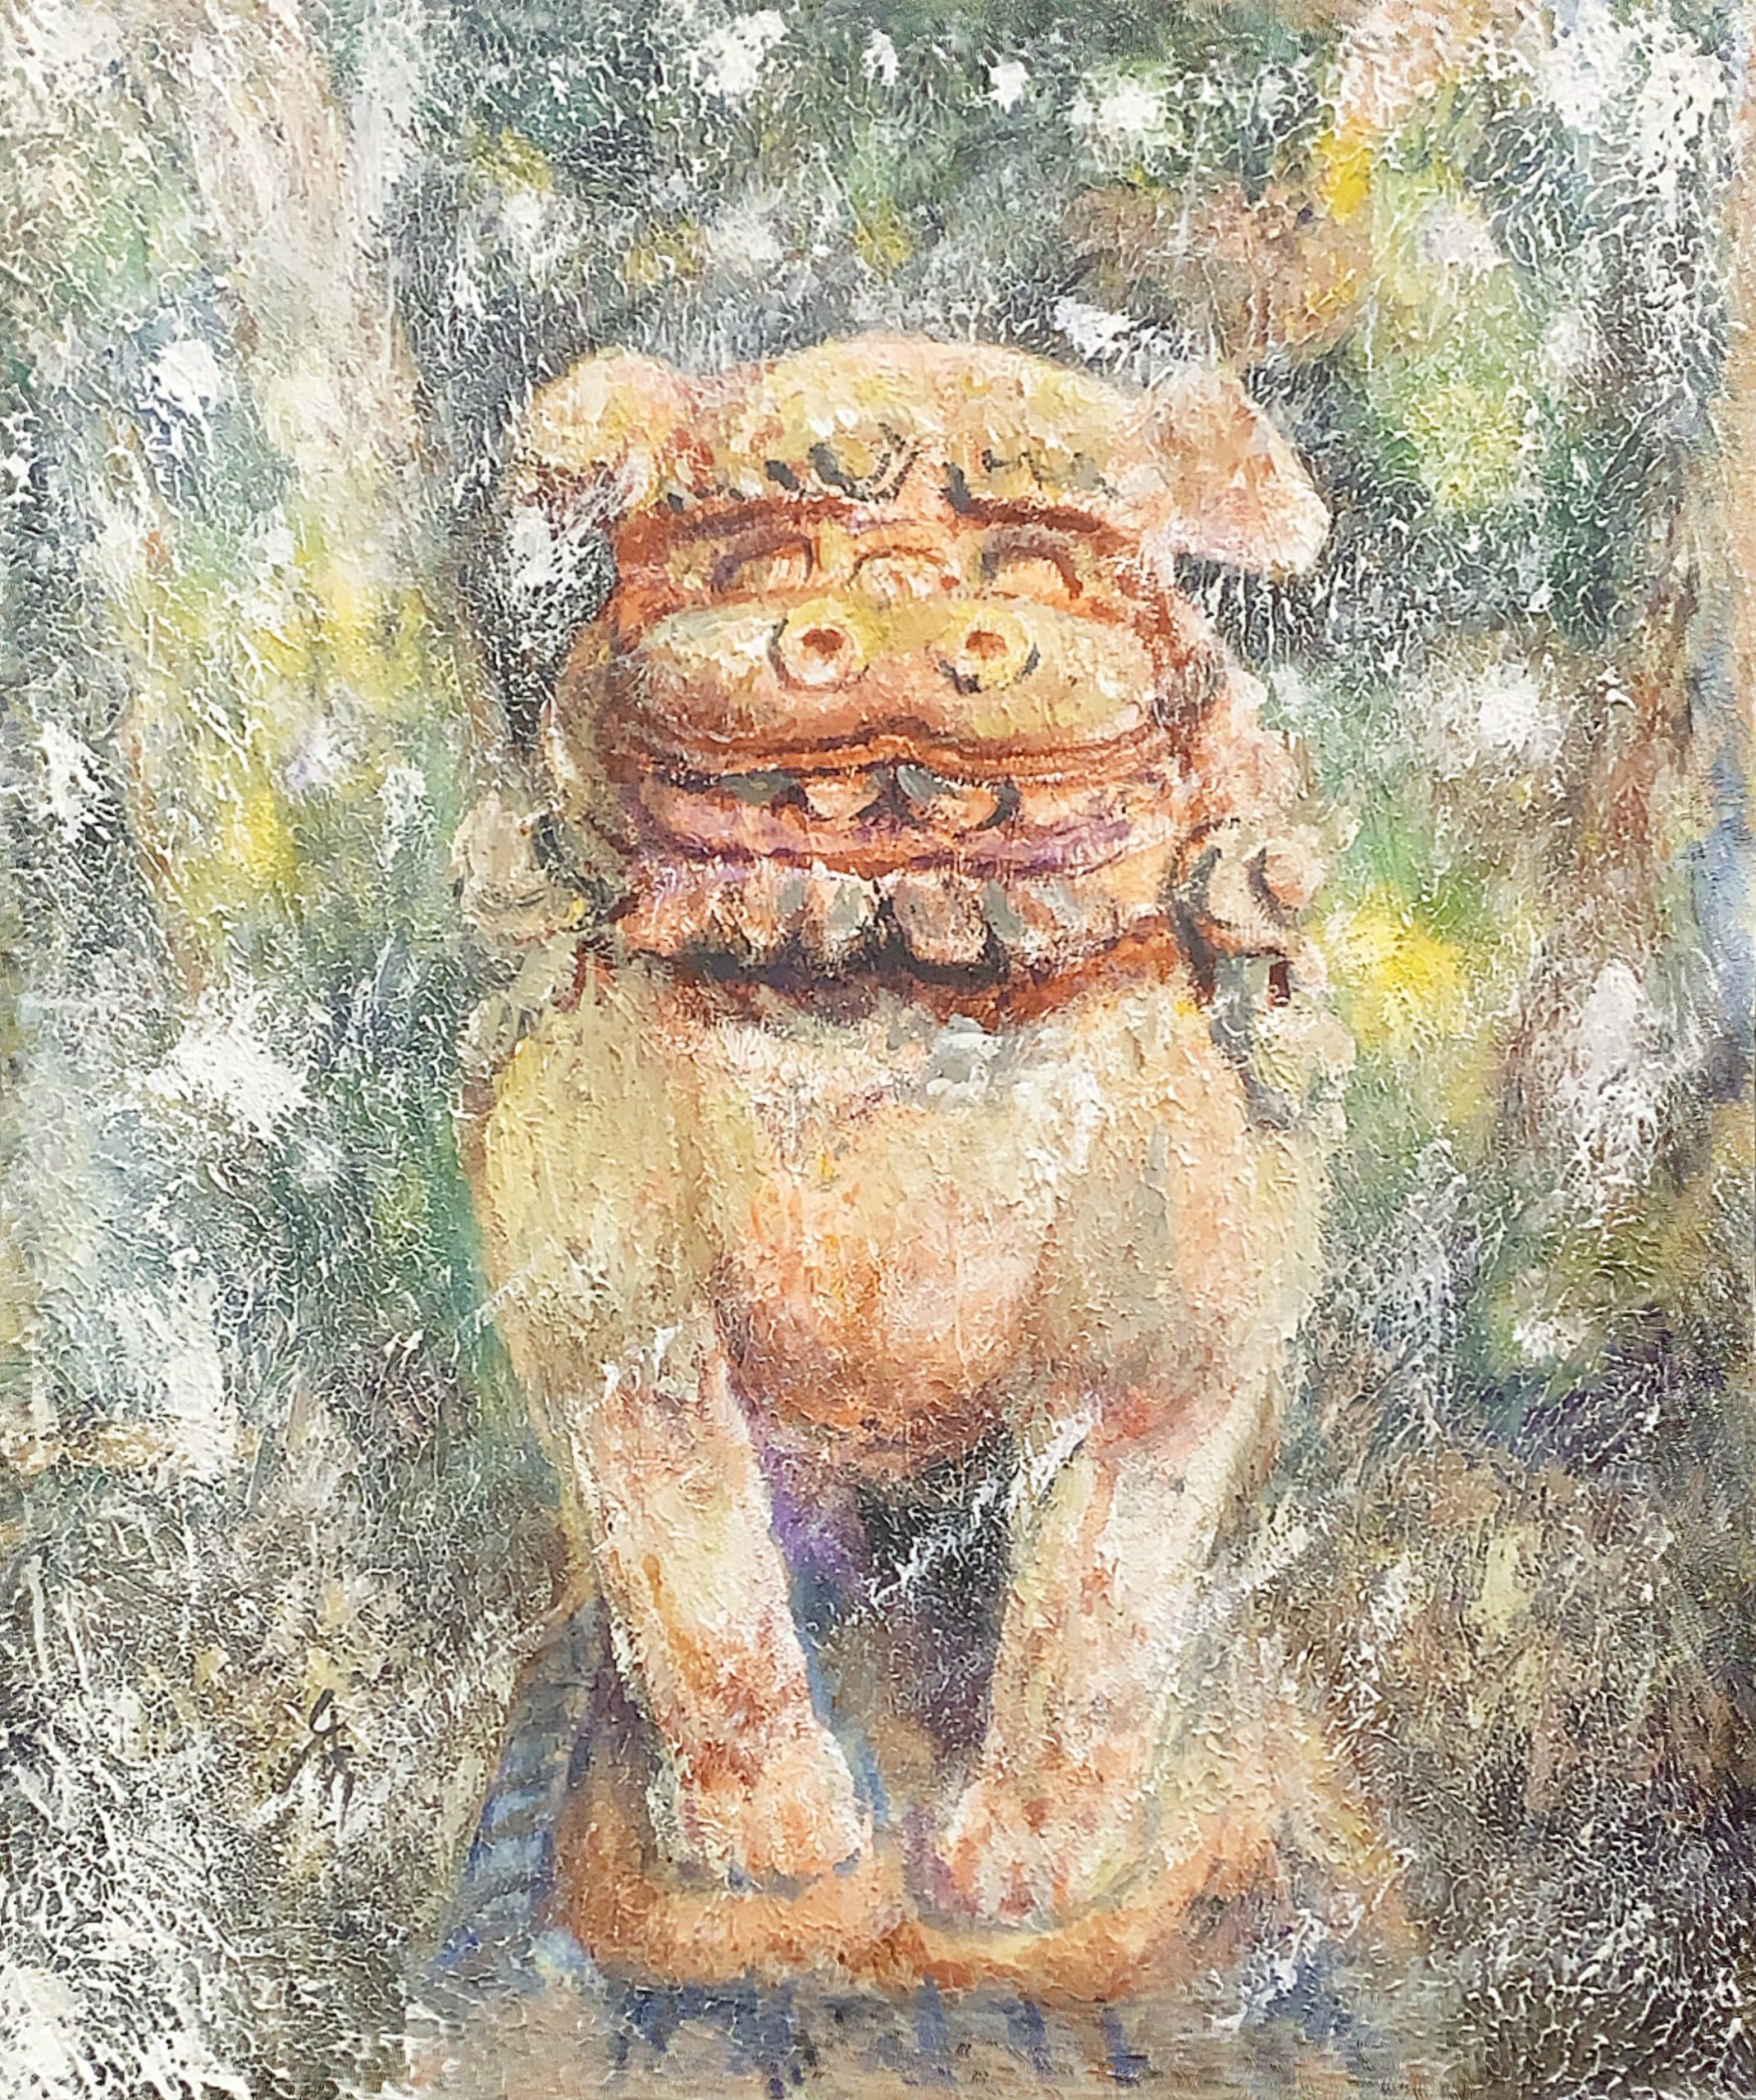 和泉熊野神社 吽形狛犬 色覚異常者の描く絵 狛犬 神社を描く色覚異常者の絵画サイト